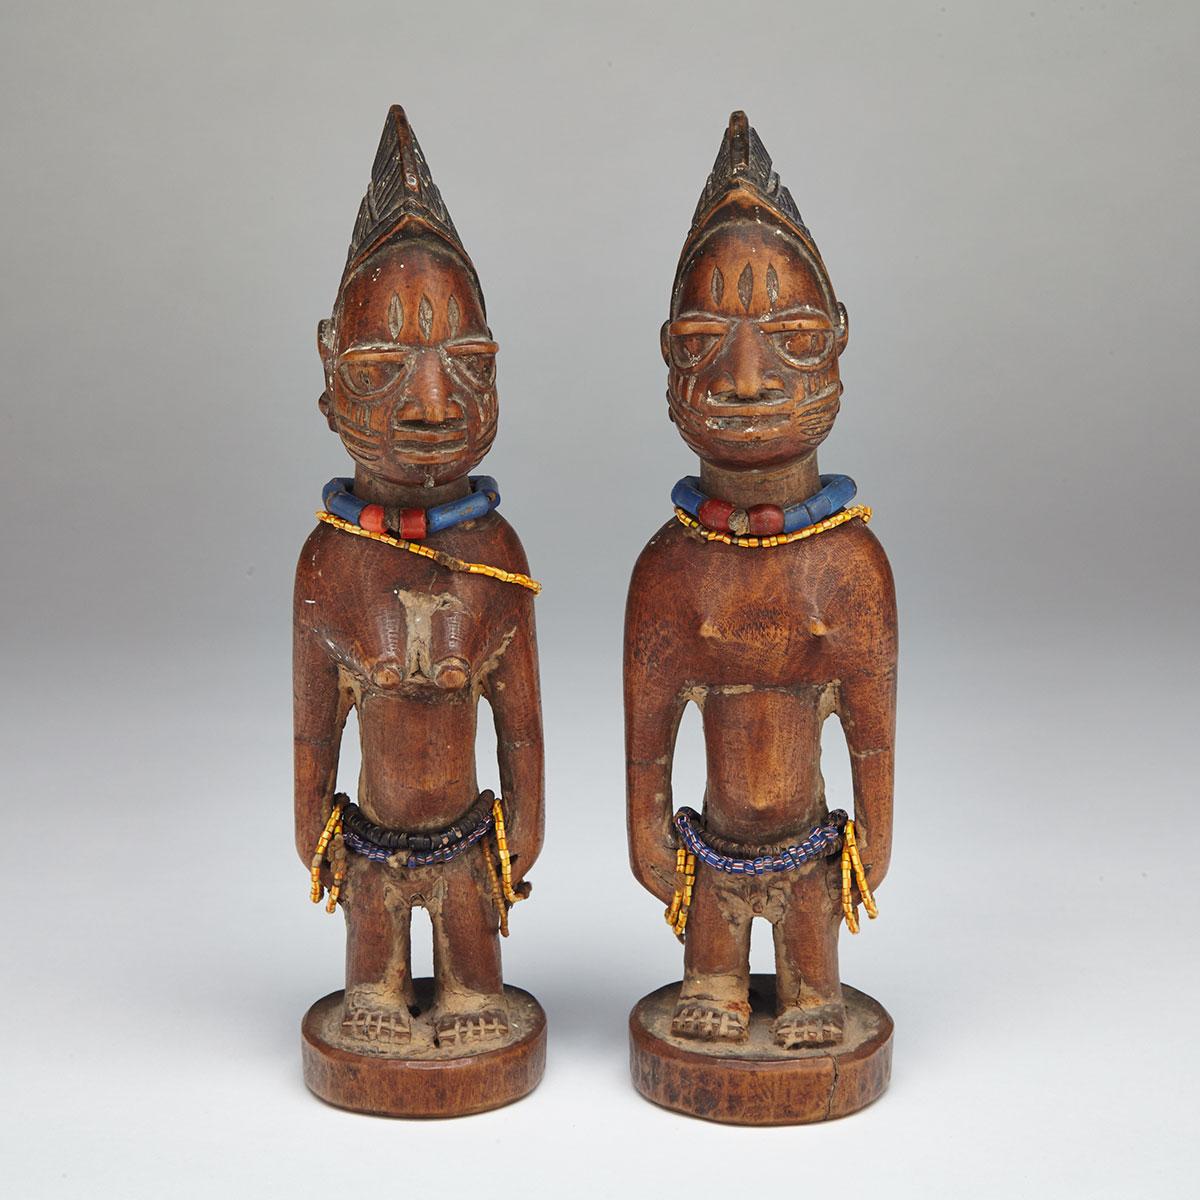 Pair of Yoruba Twin (Ibeji) Figures, mid 20th century